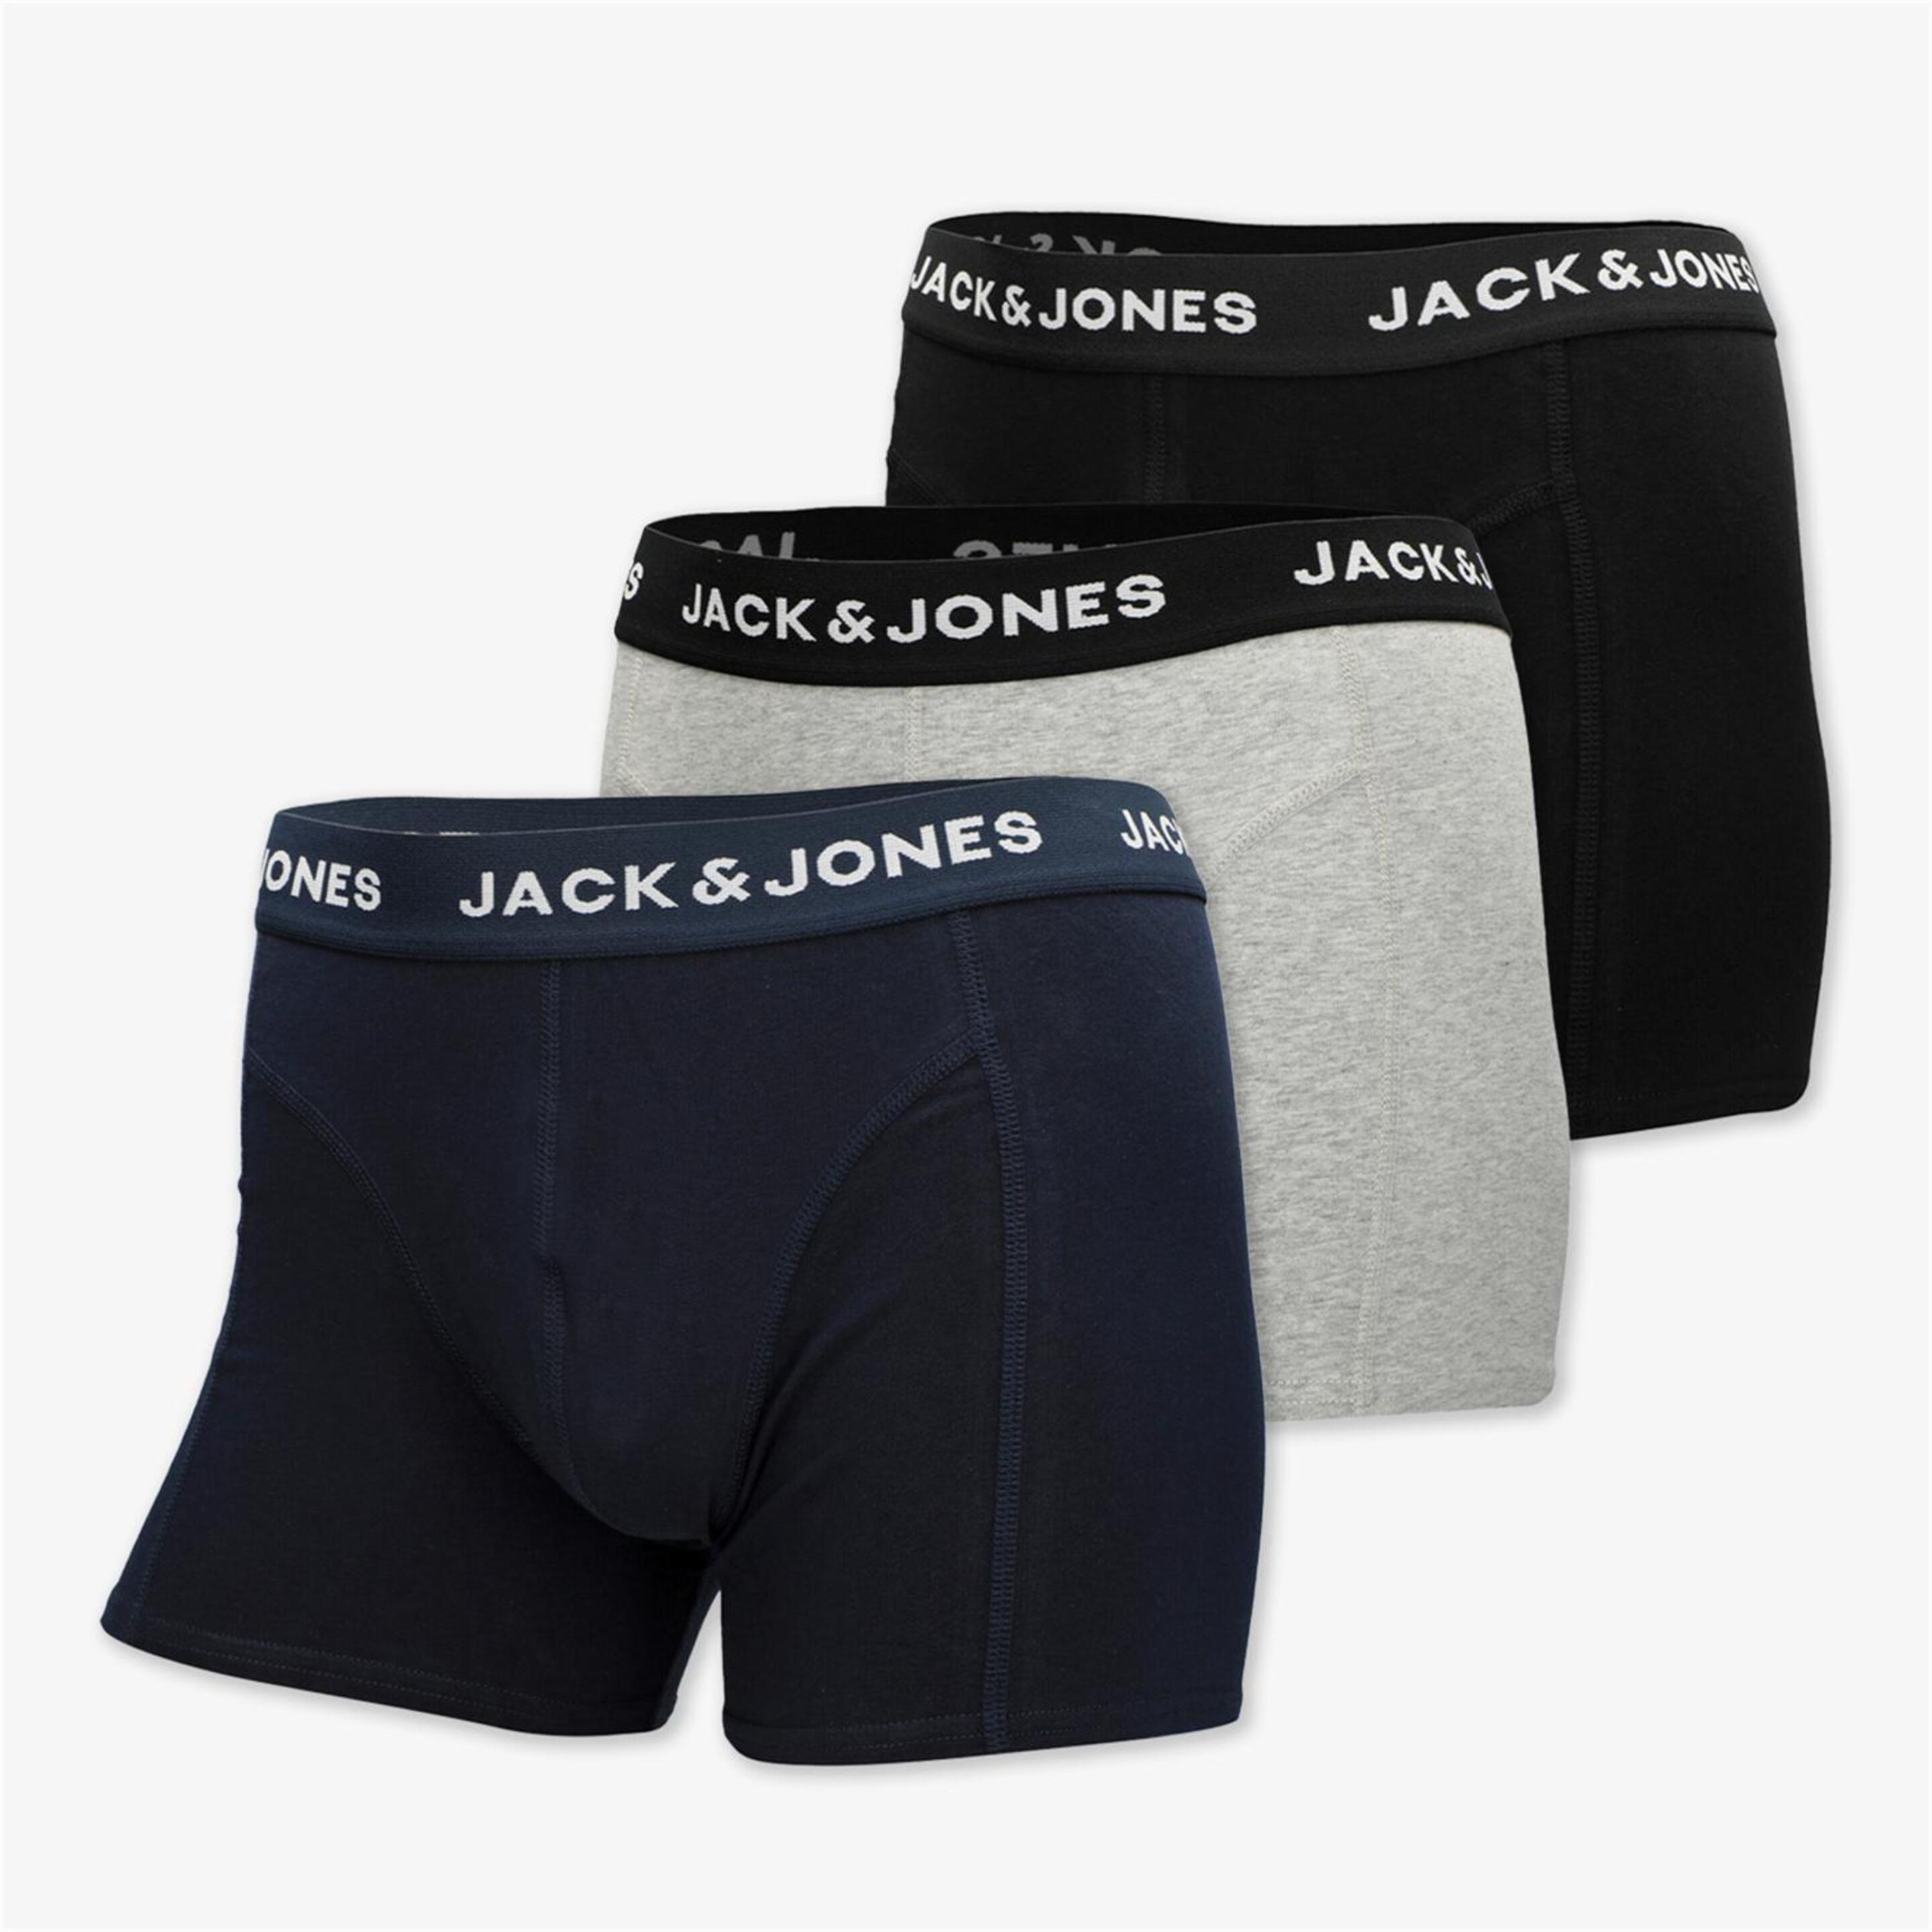 Jack & Jones Jacanthony - gris - Calzoncillos Bóxer